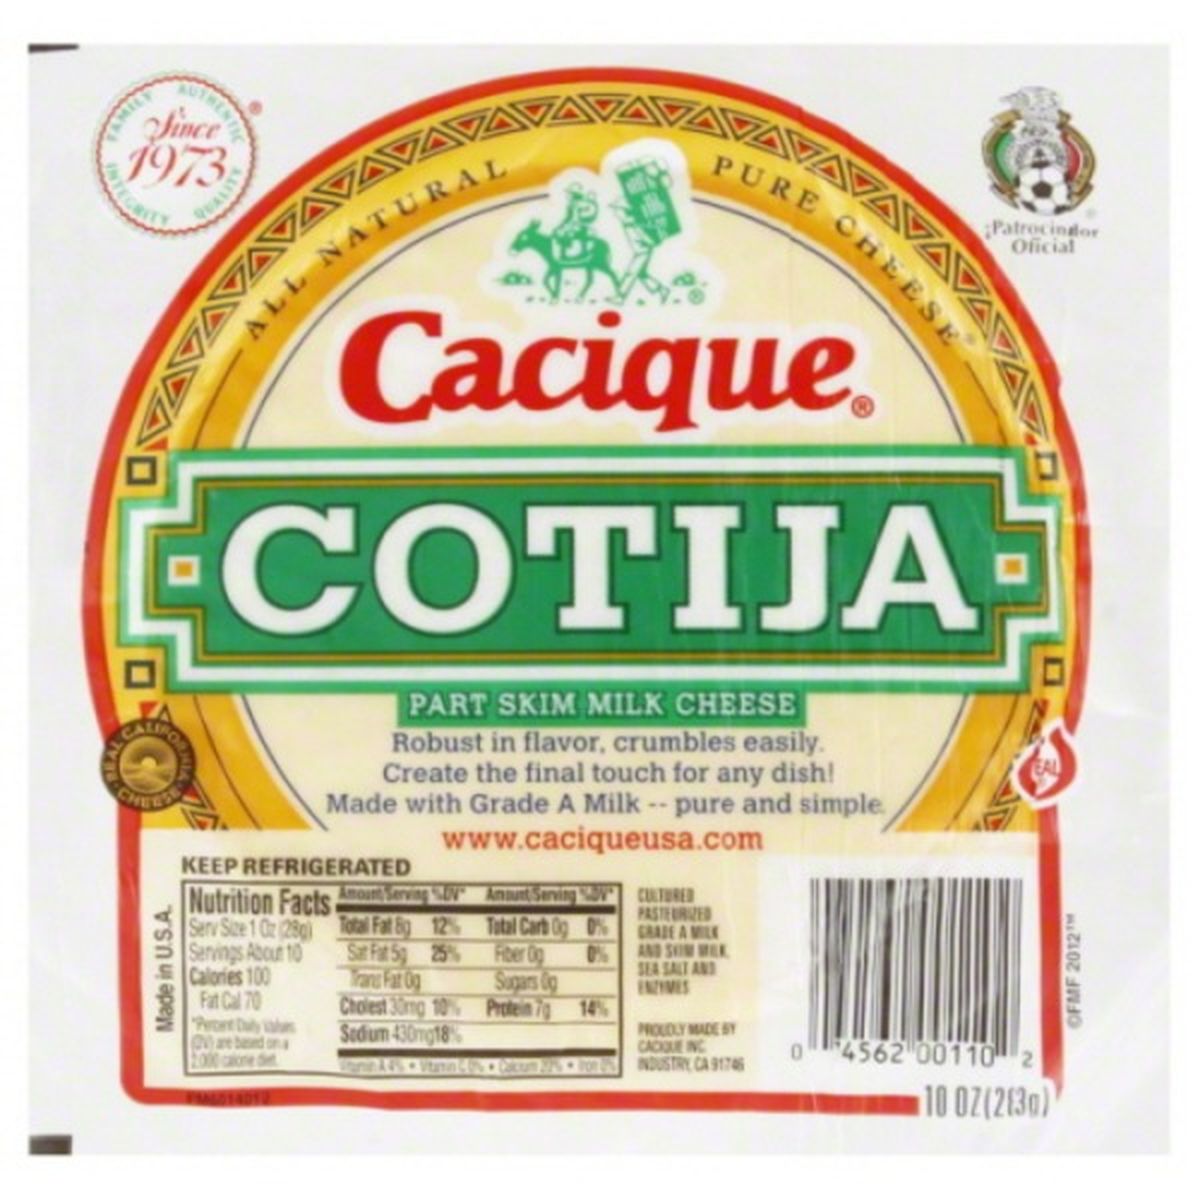 Calories in Cacique Cotija